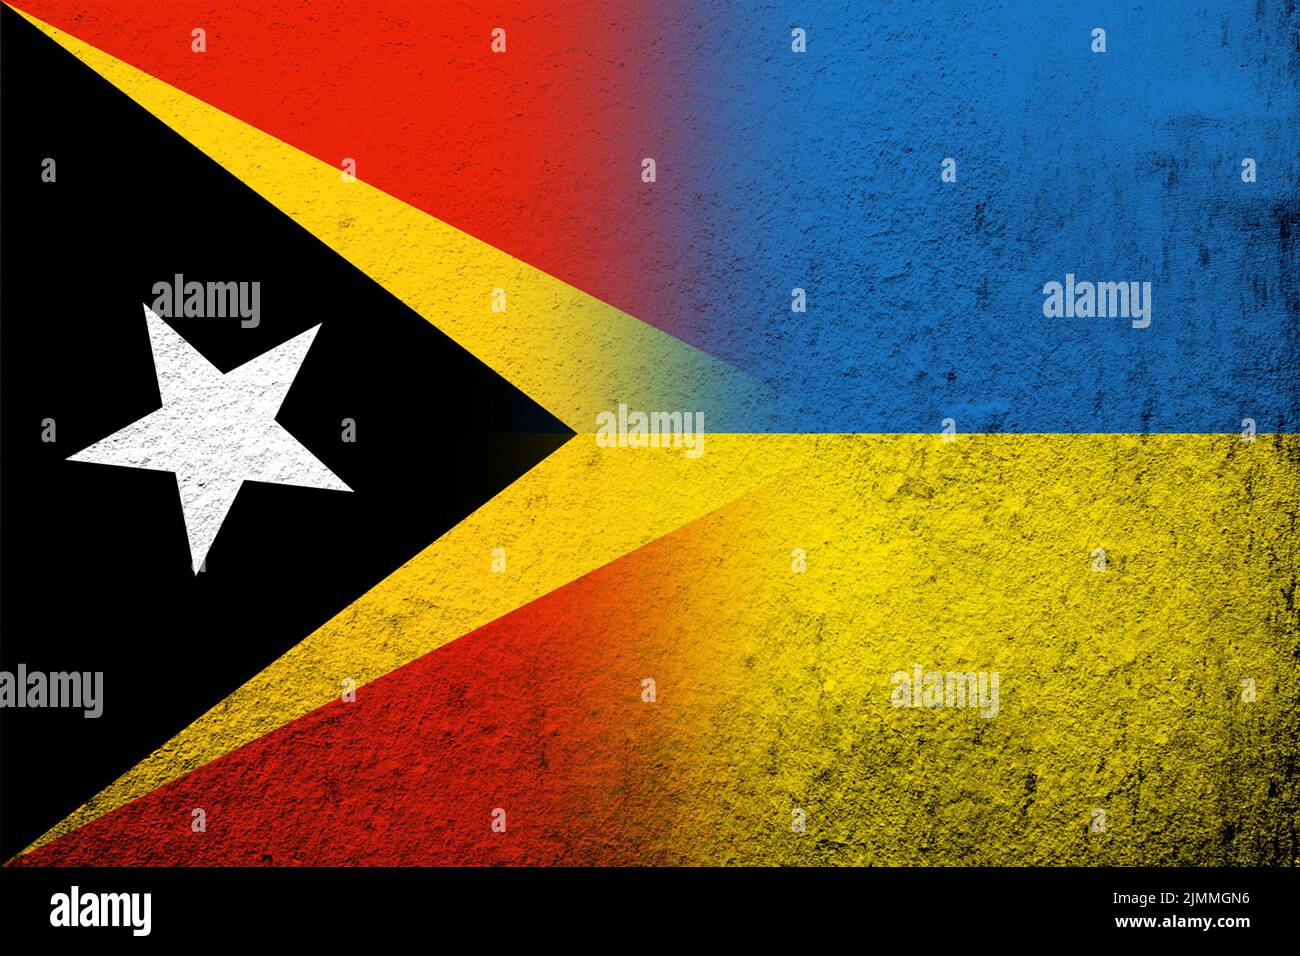 La République démocratique du Timor-Leste avec le drapeau national de l'Ukraine. Grunge l'arrière-plan Banque D'Images